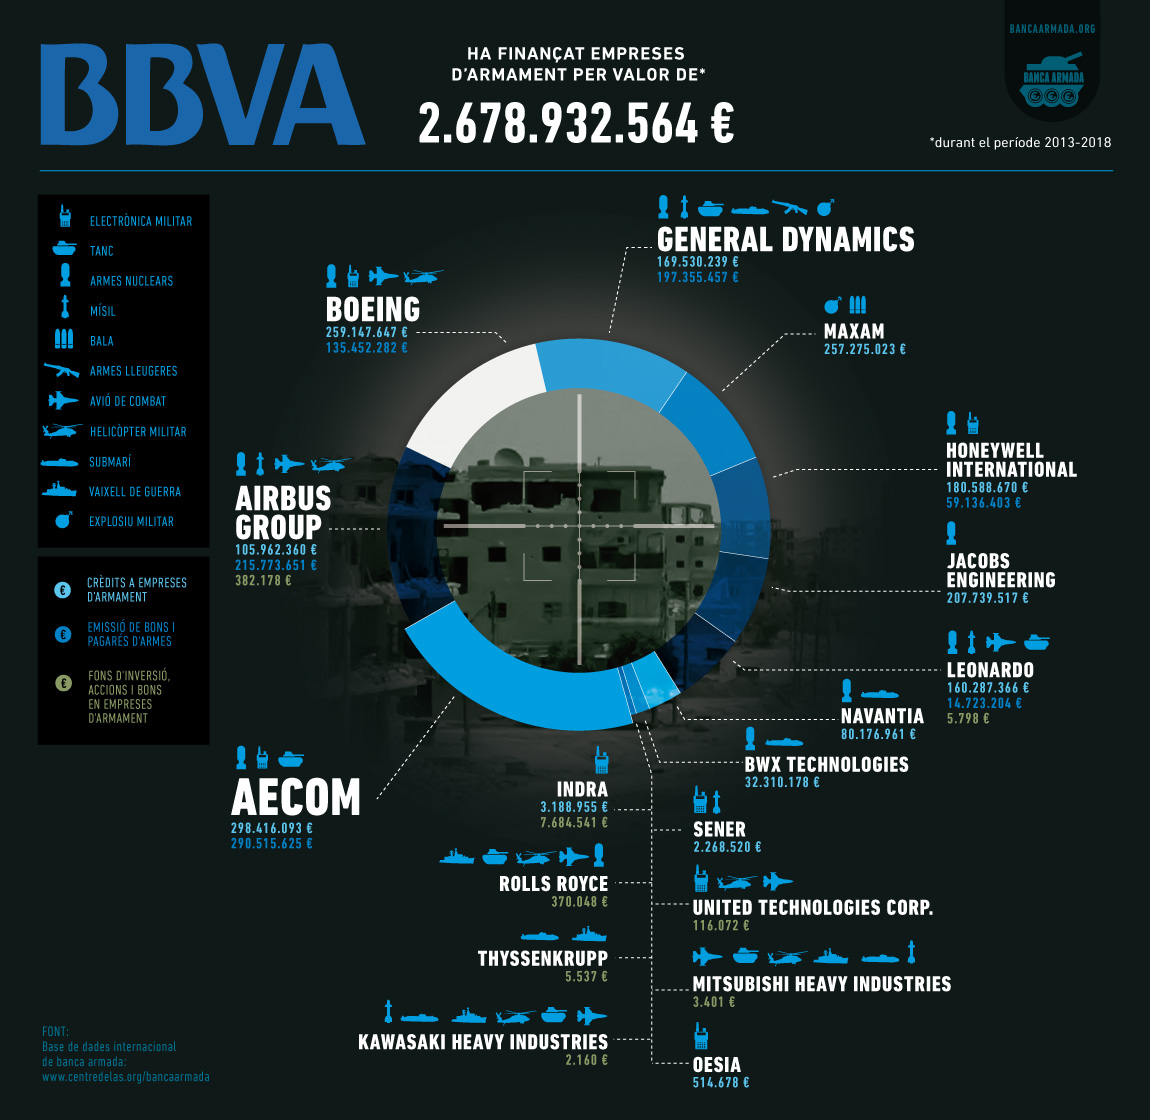 Infografia “BBVA: Finançament a empreses d’armes 2013-2018”